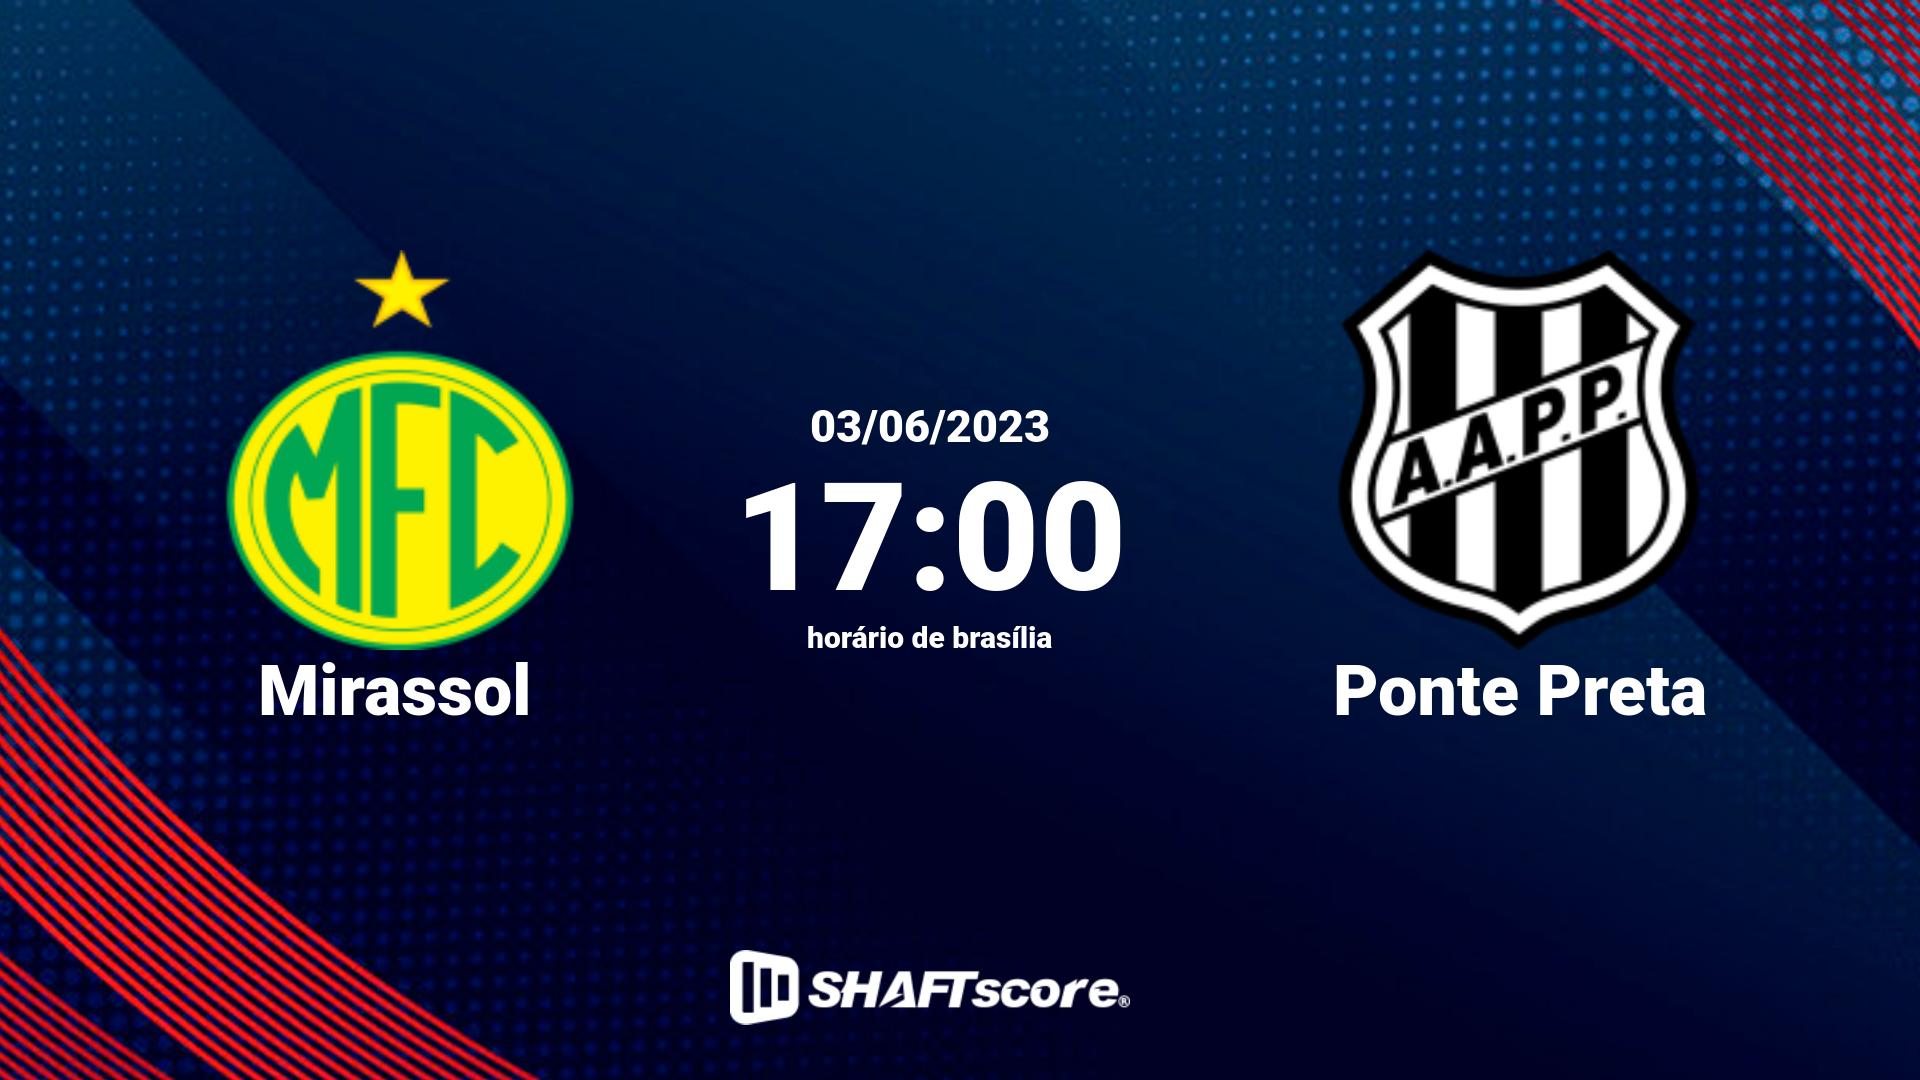 Estatísticas do jogo Mirassol vs Ponte Preta 03.06 17:00